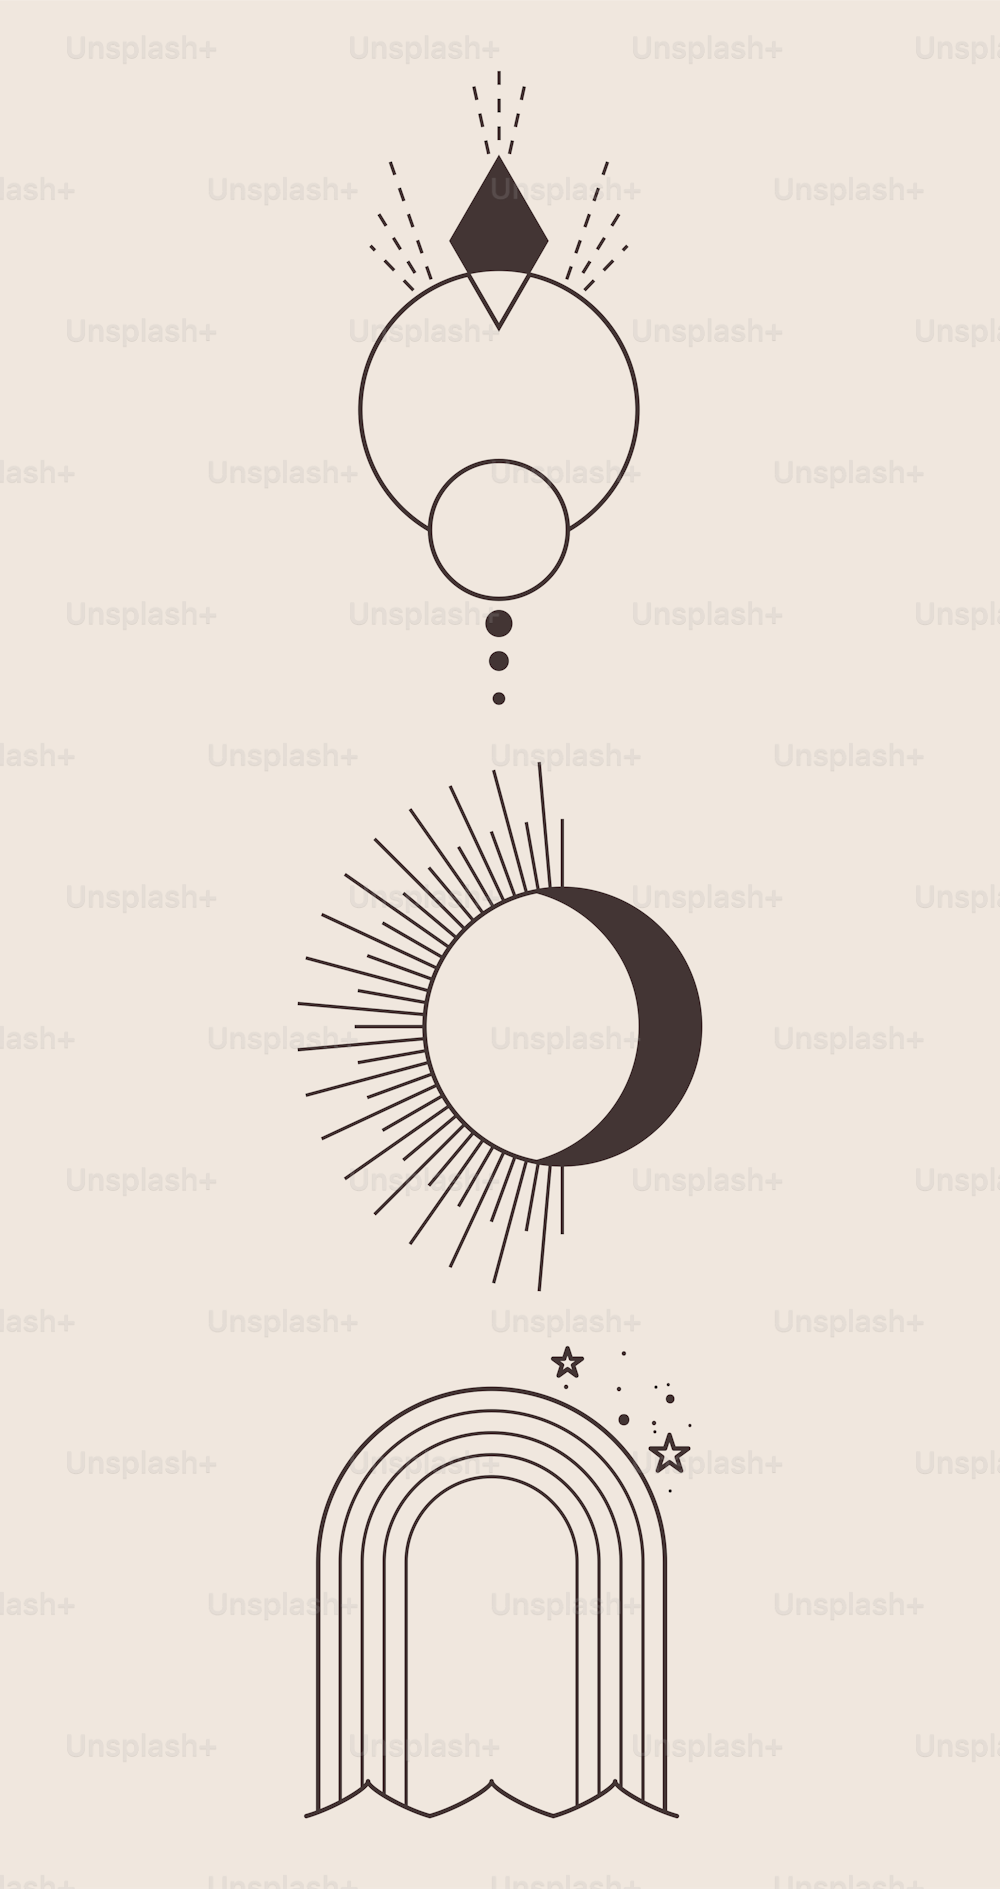 Conjunto de tres elegantes ilustraciones. Fondo claro del logotipo negro. Plantillas de tinta de puntos dibujadas a mano.